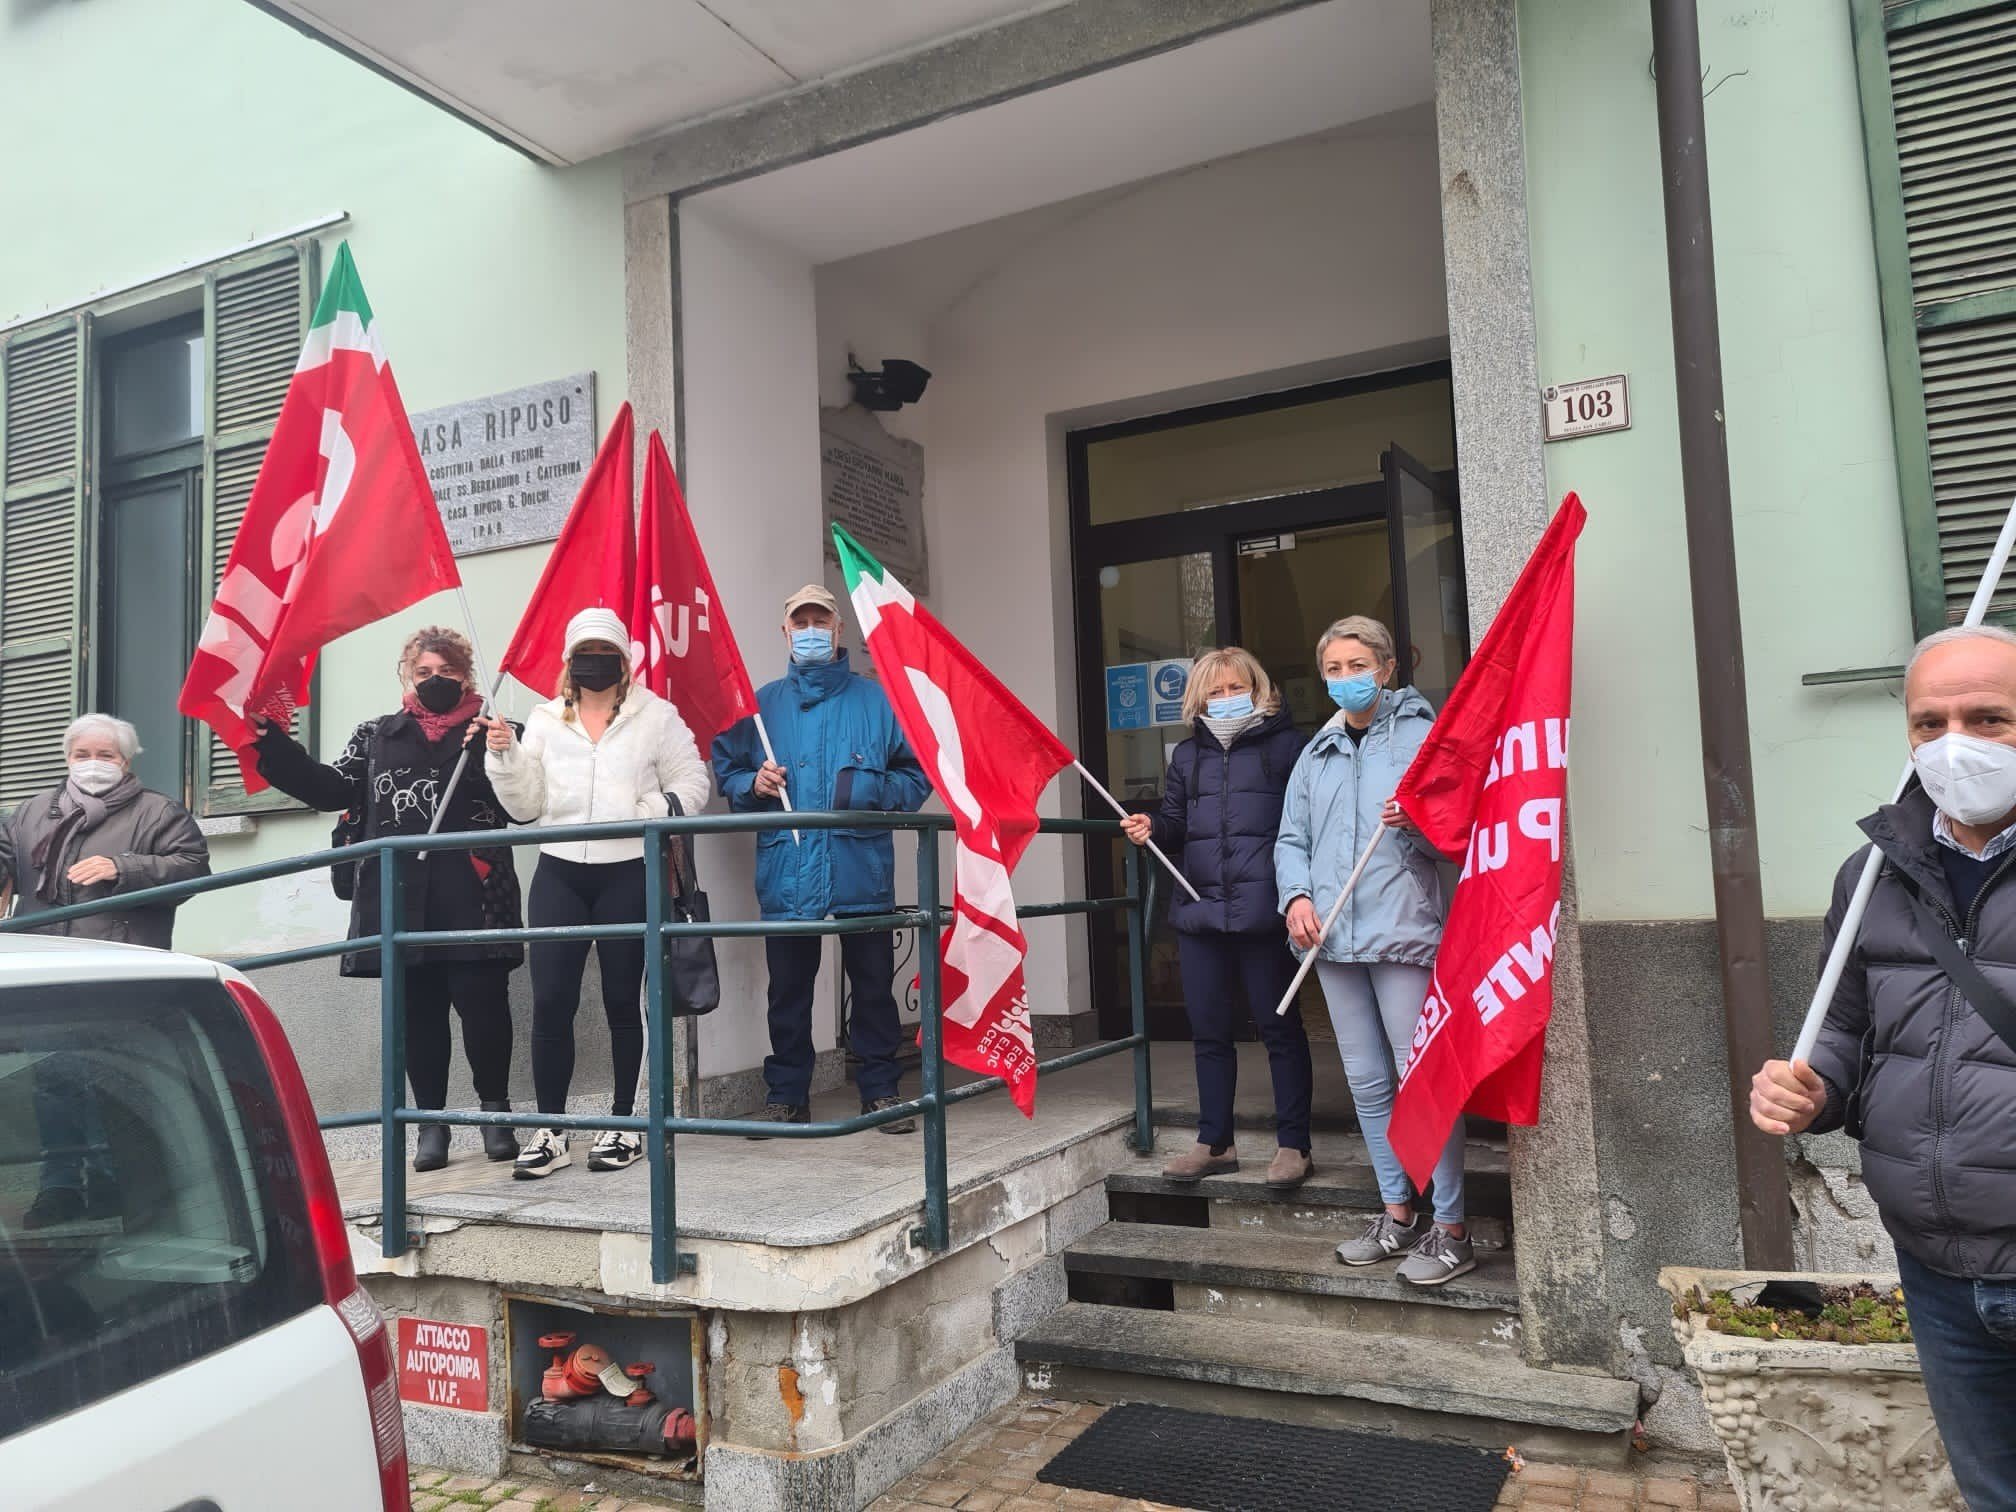 Casa di riposo Castellazzo, Cgil: “Lavoratori vengano ricollocati dove saranno accolti gli ospiti”